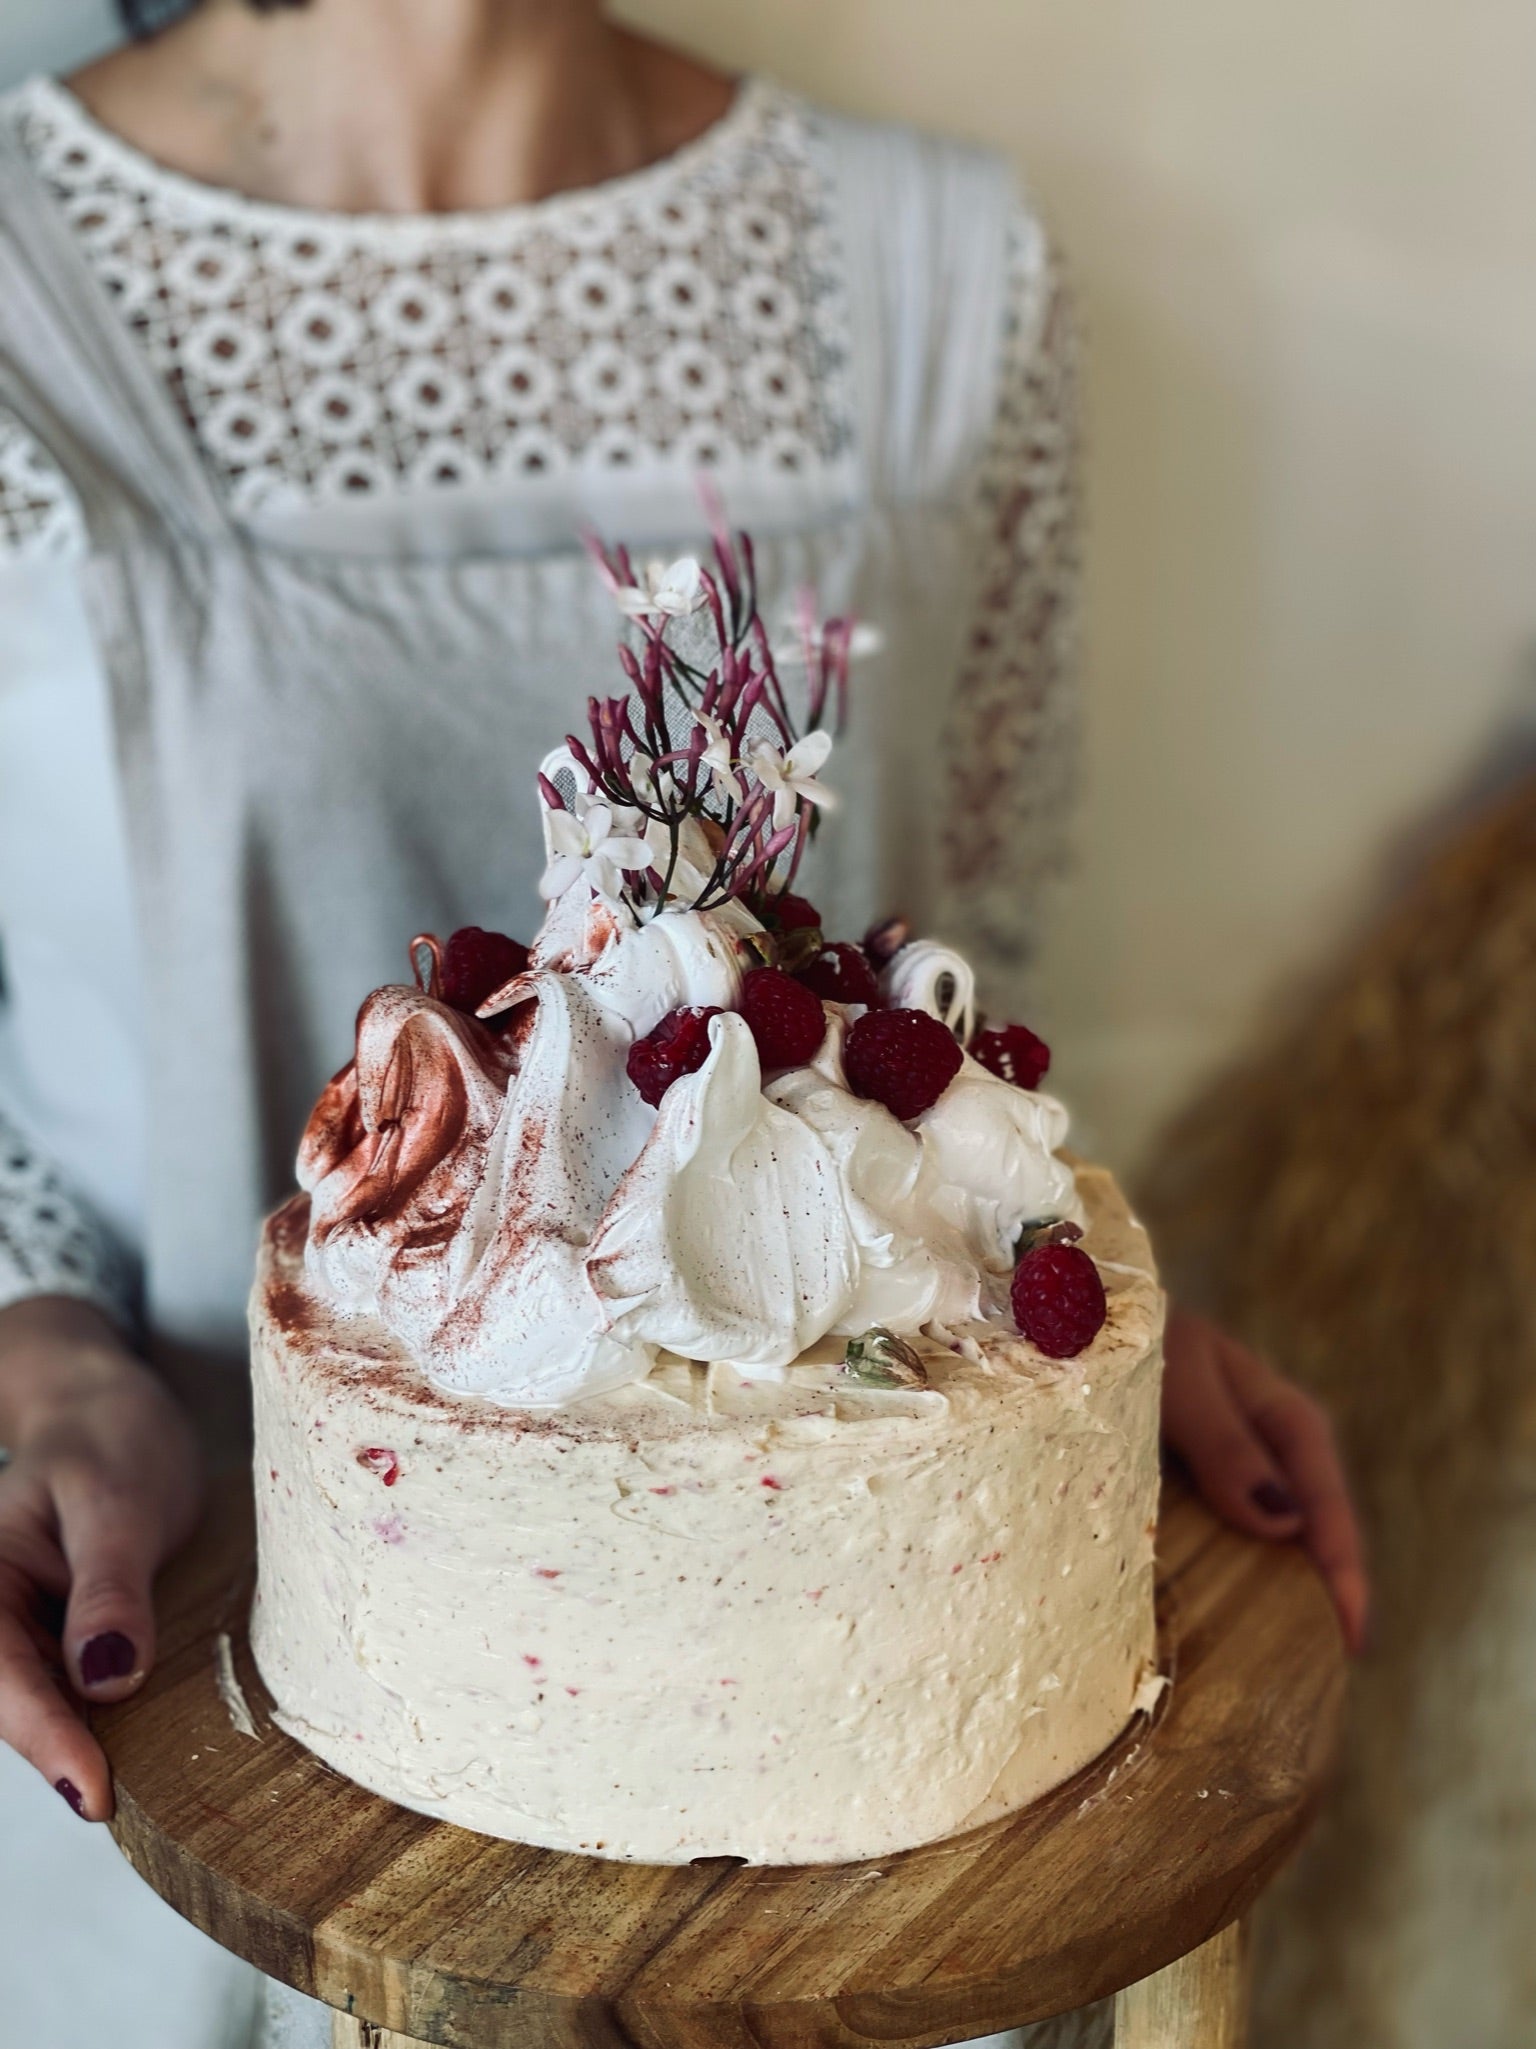 Raspberry + Pistachio cake